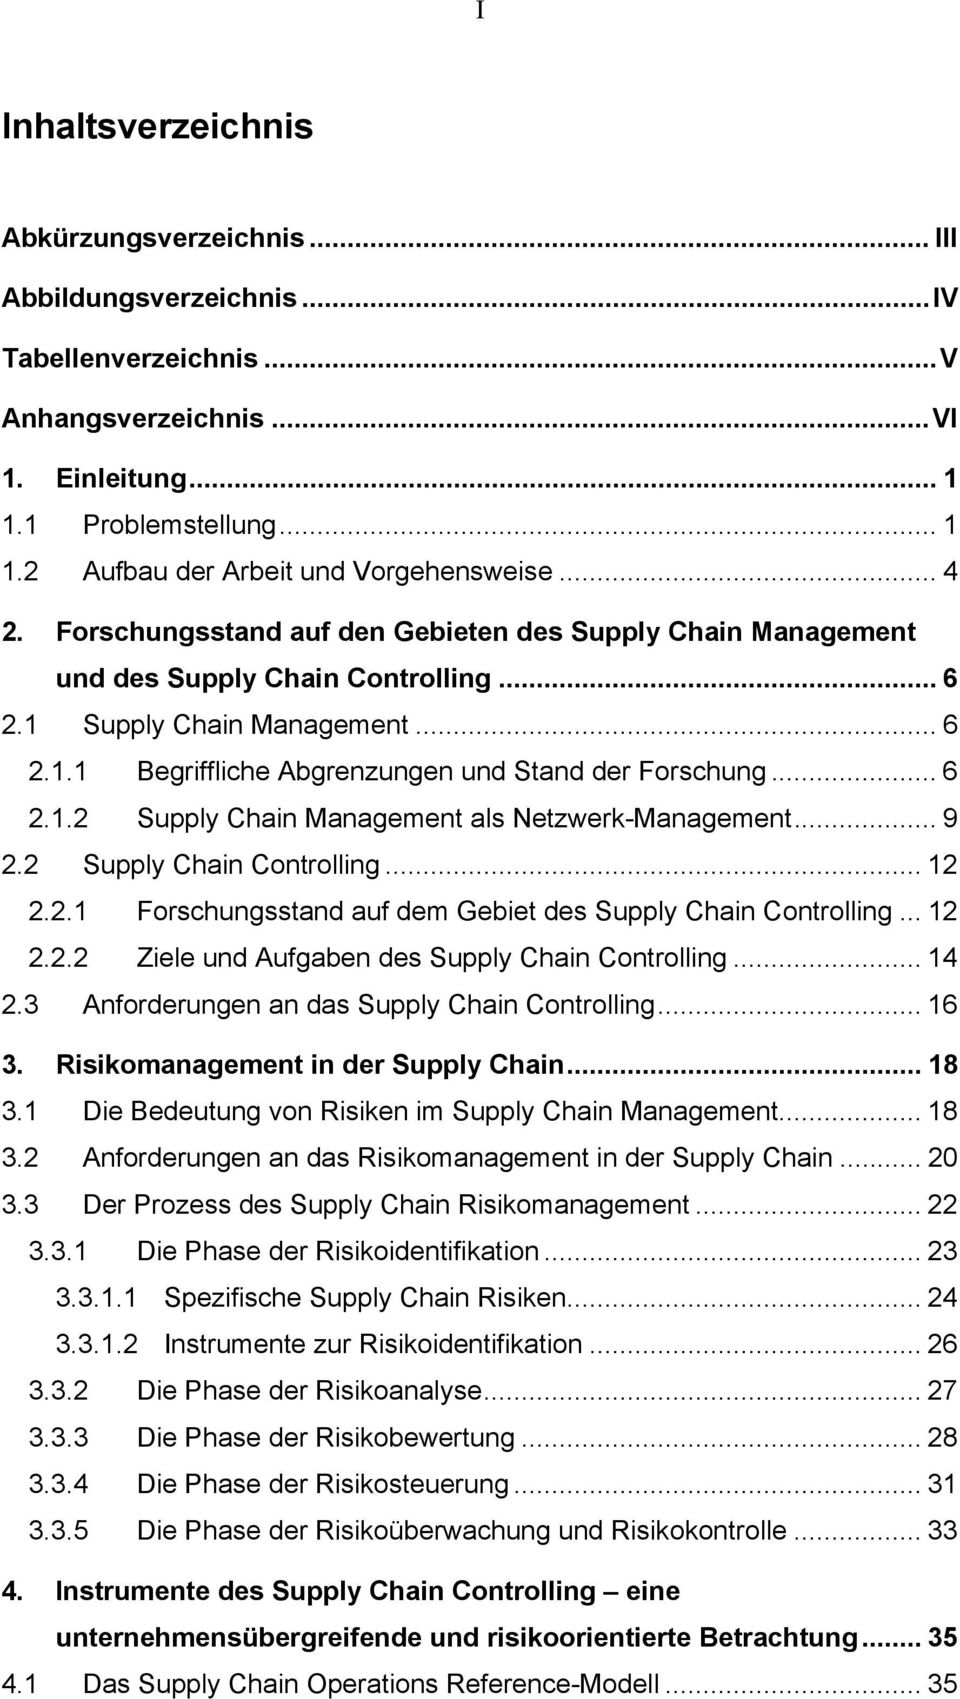 .. 6 2.1.2 Supply Chain Management als Netzwerk-Management... 9 2.2 Supply Chain Controlling... 12 2.2.1 Forschungsstand auf dem Gebiet des Supply Chain Controlling... 12 2.2.2 Ziele und Aufgaben des Supply Chain Controlling.